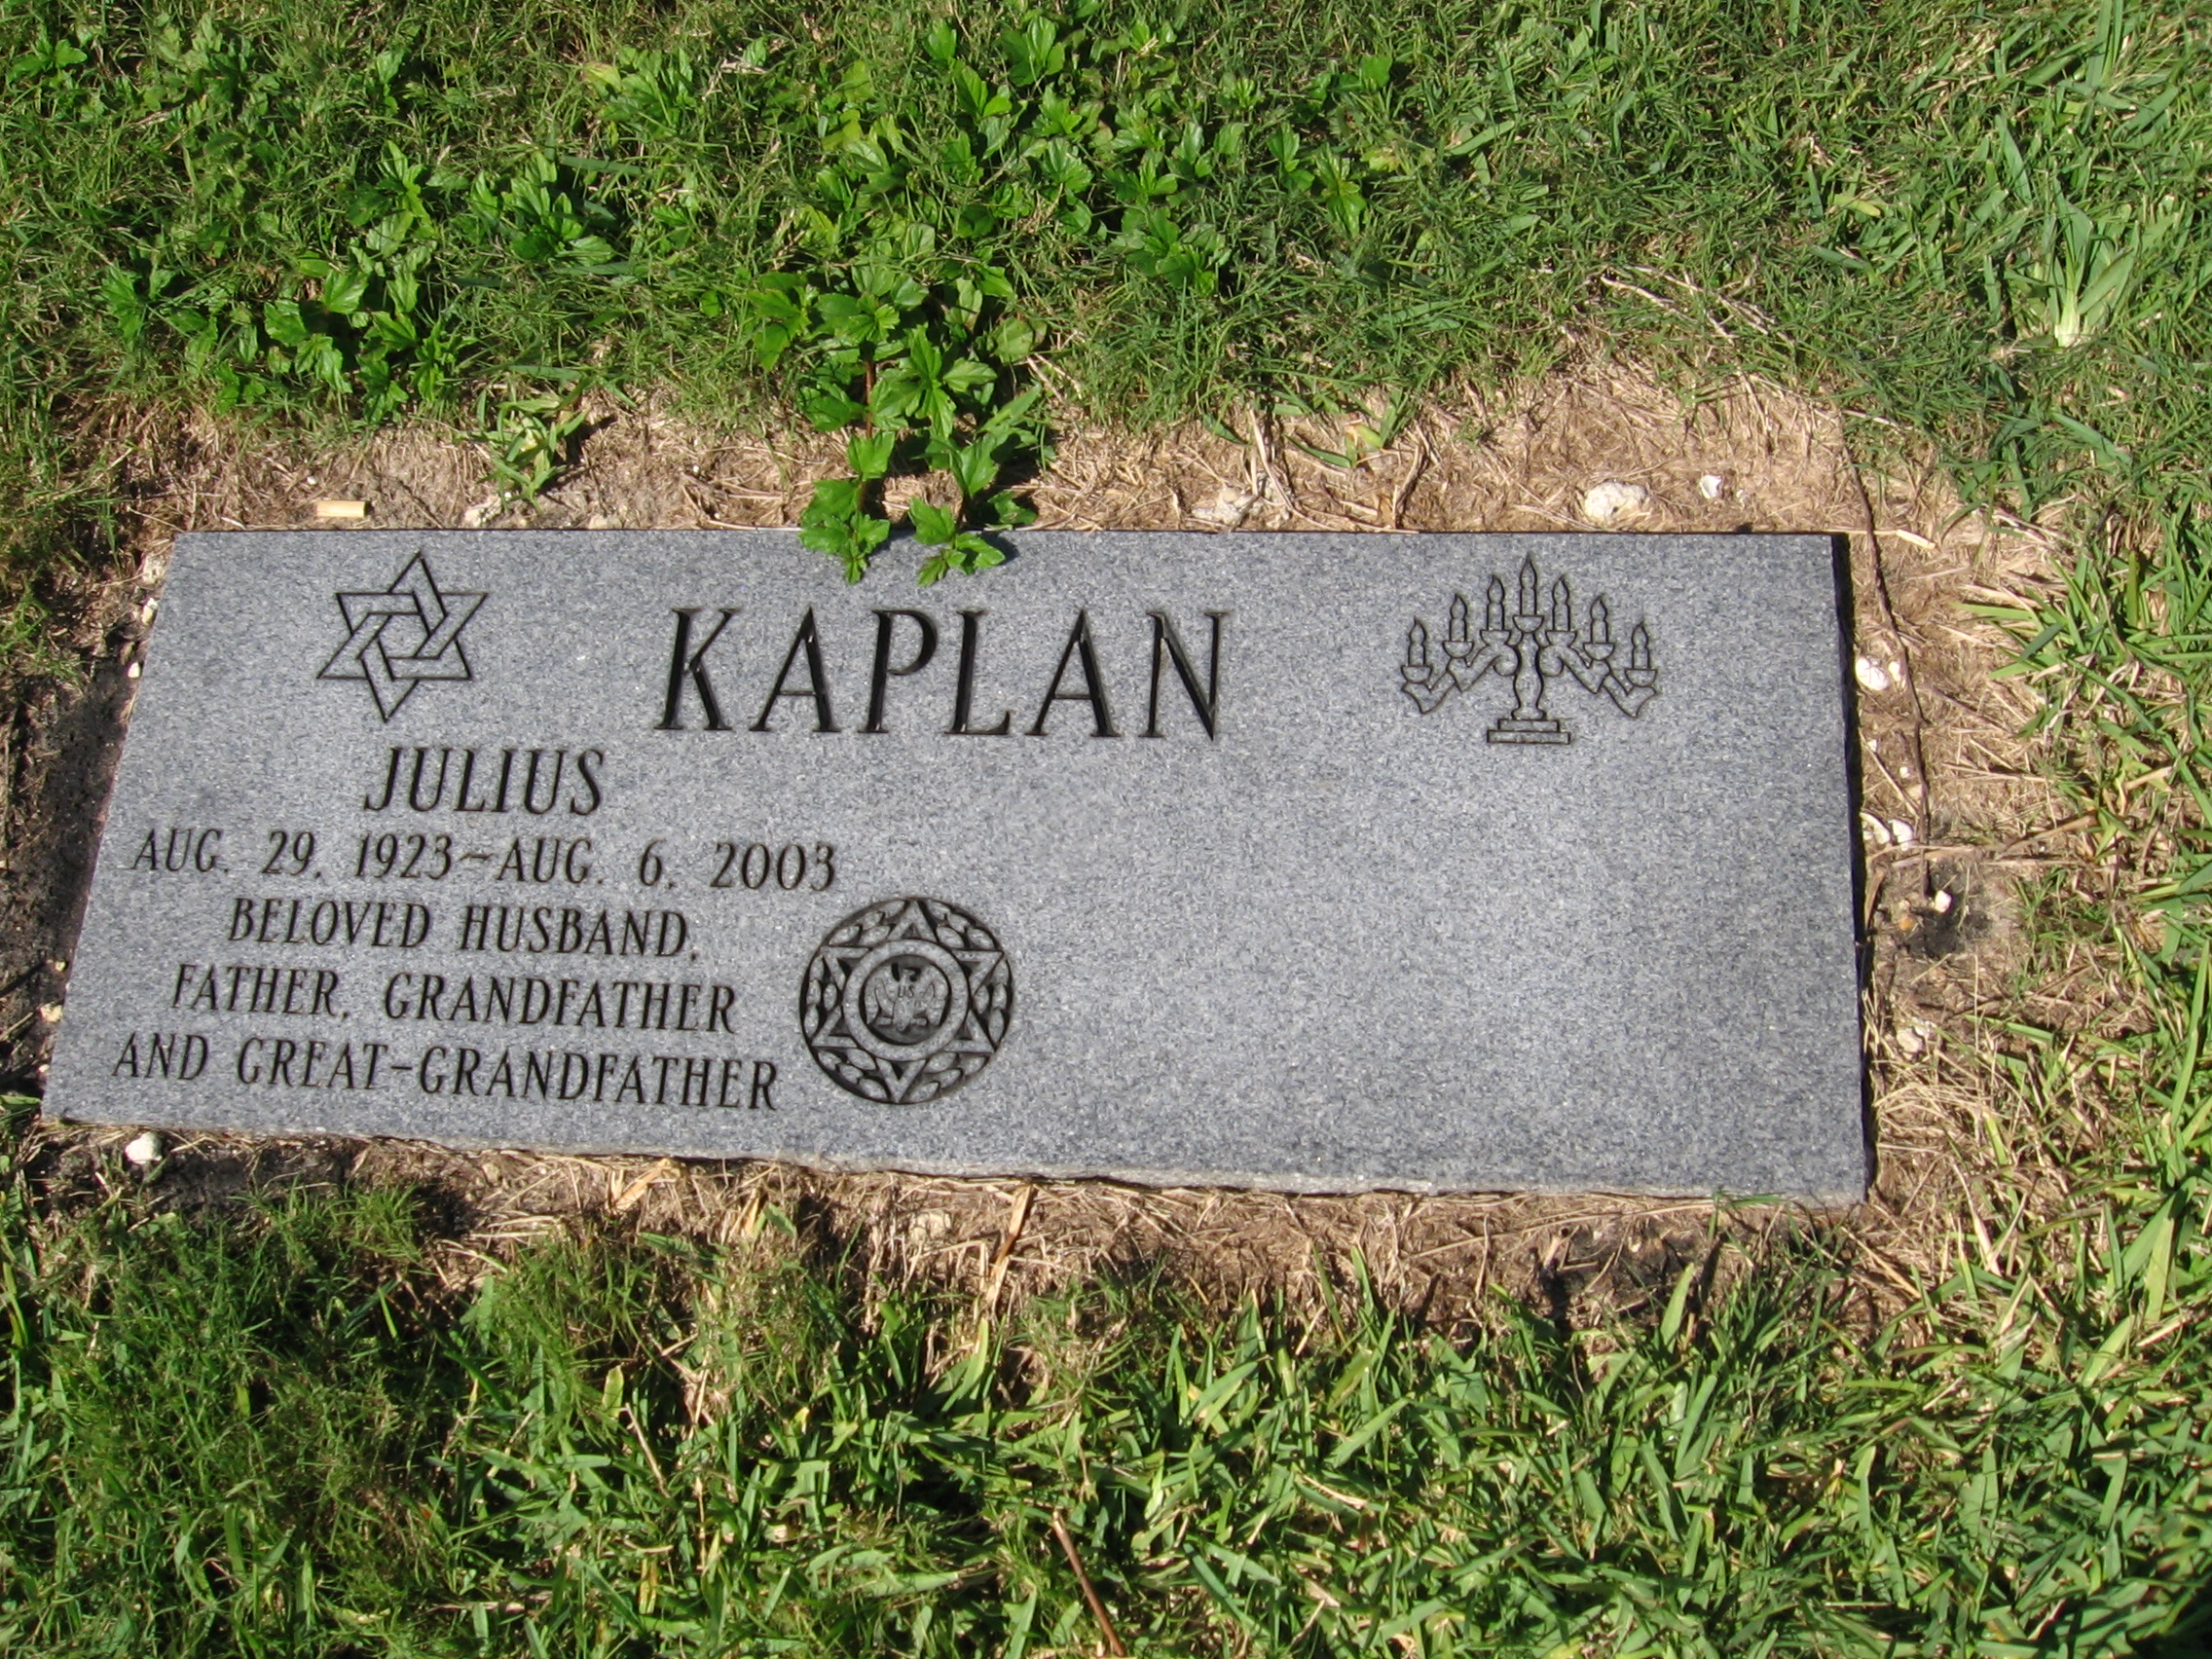 Julius Kaplan